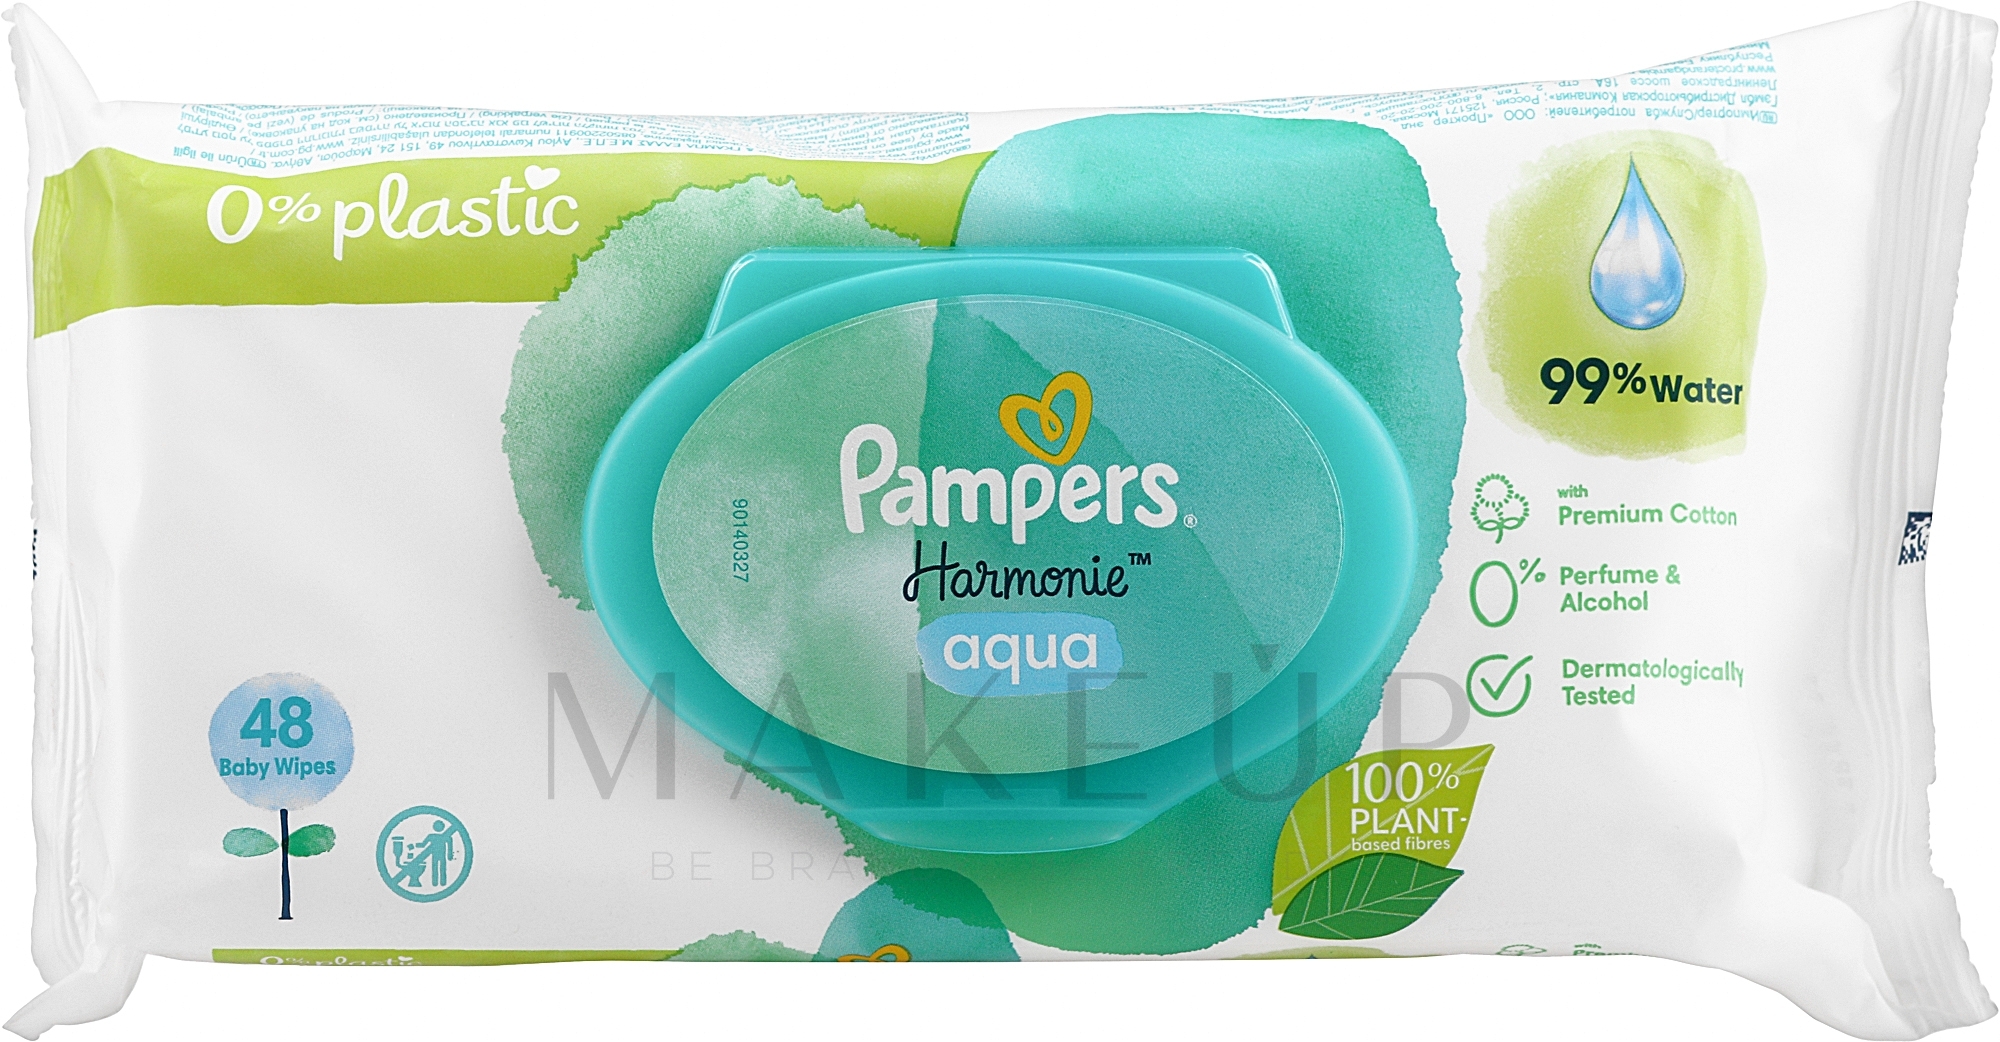 Feuchttücher für Babys 48 St. - Pampers Harmonie Aqua Baby Wipes — Bild 48 St.